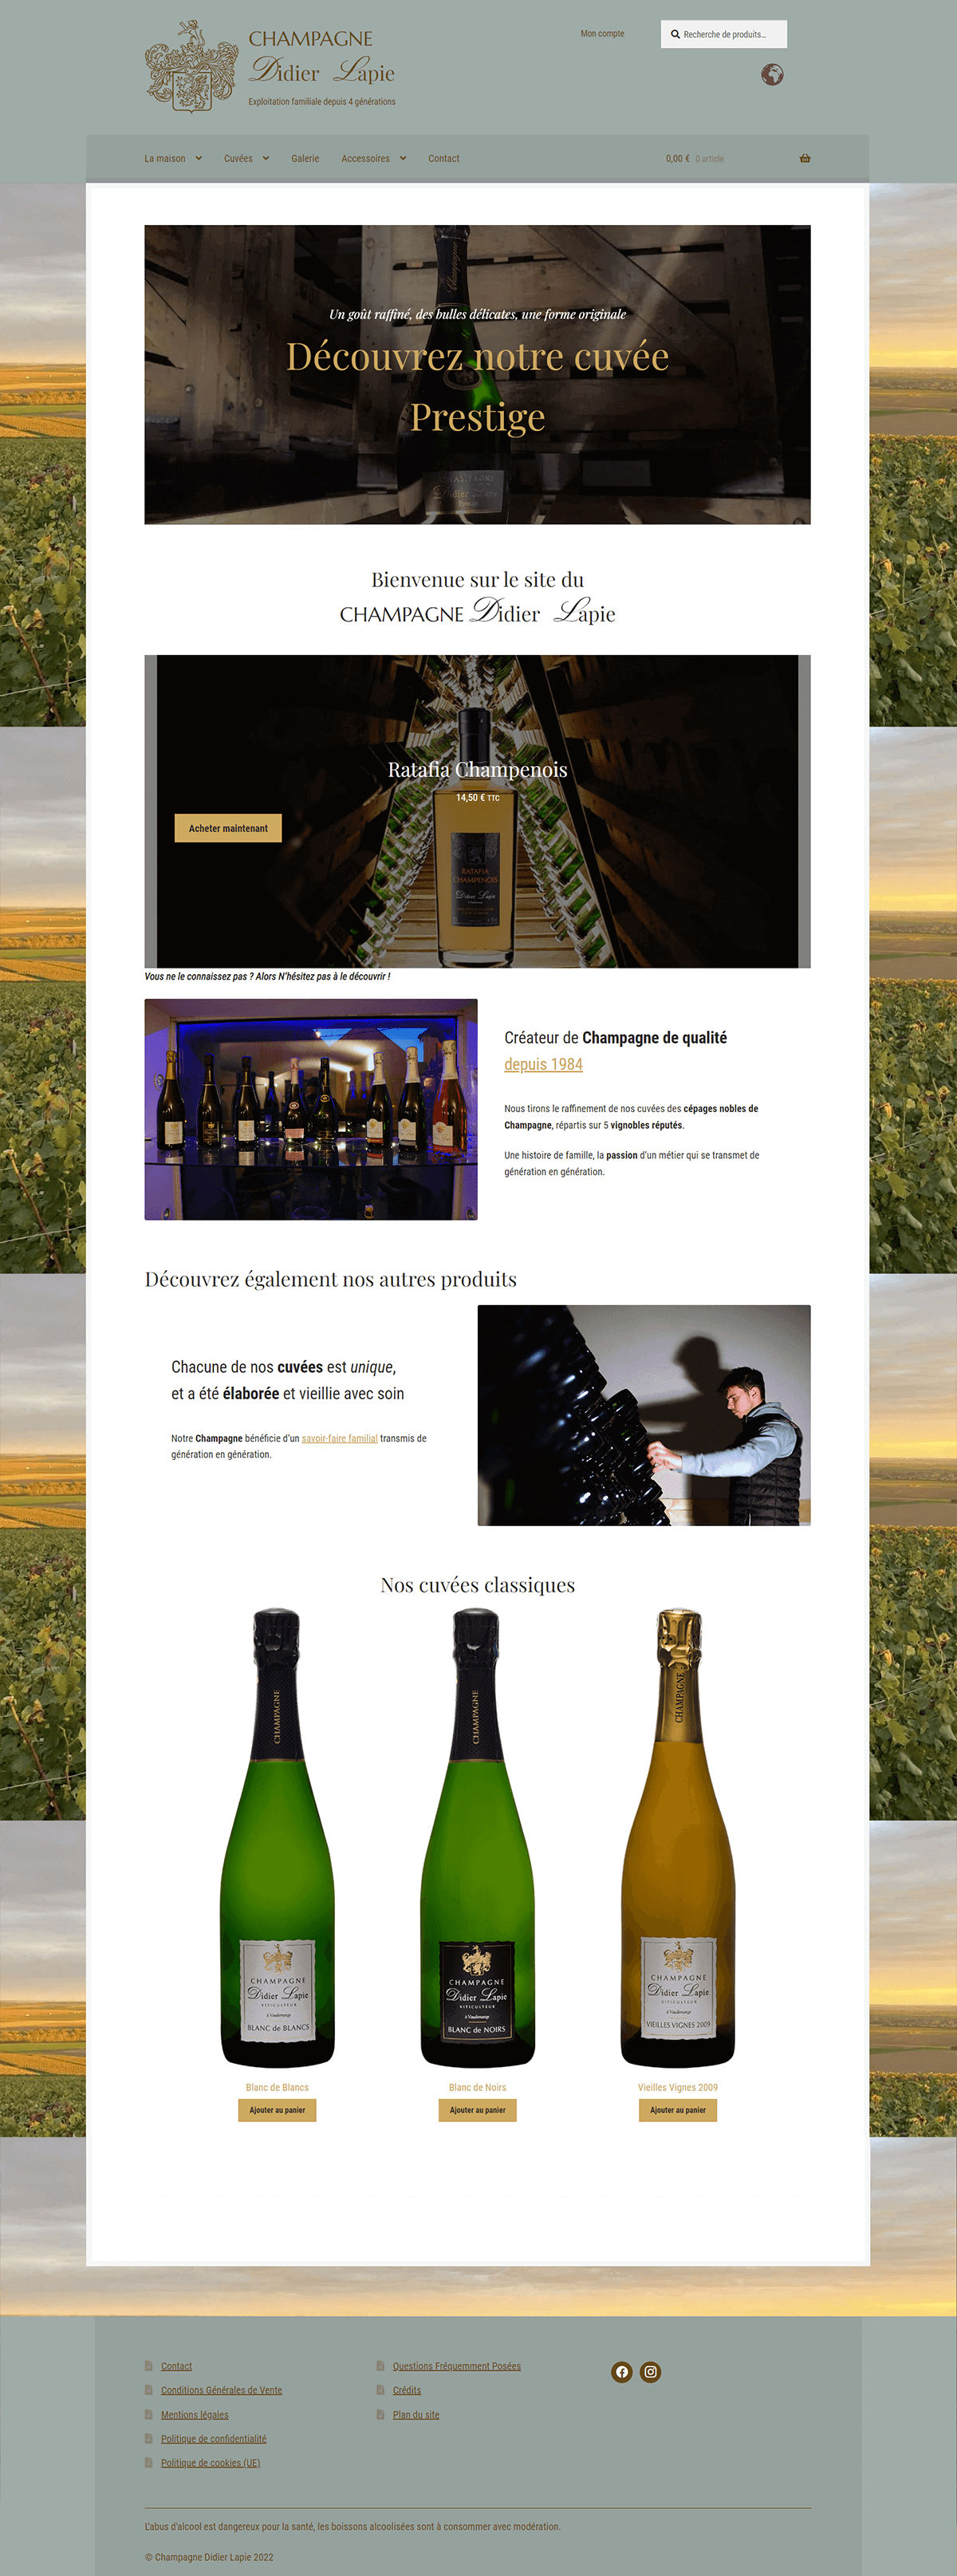 Capture d'écran du site Champagne Didier Lapie, encart vidéo "Découvrez notre cuvée Prestige", "Bienvenue sur le site du Champagne DL", encart produit "Ratafia Champenois", "Créateur de Champagne de qualité depuis 1984"